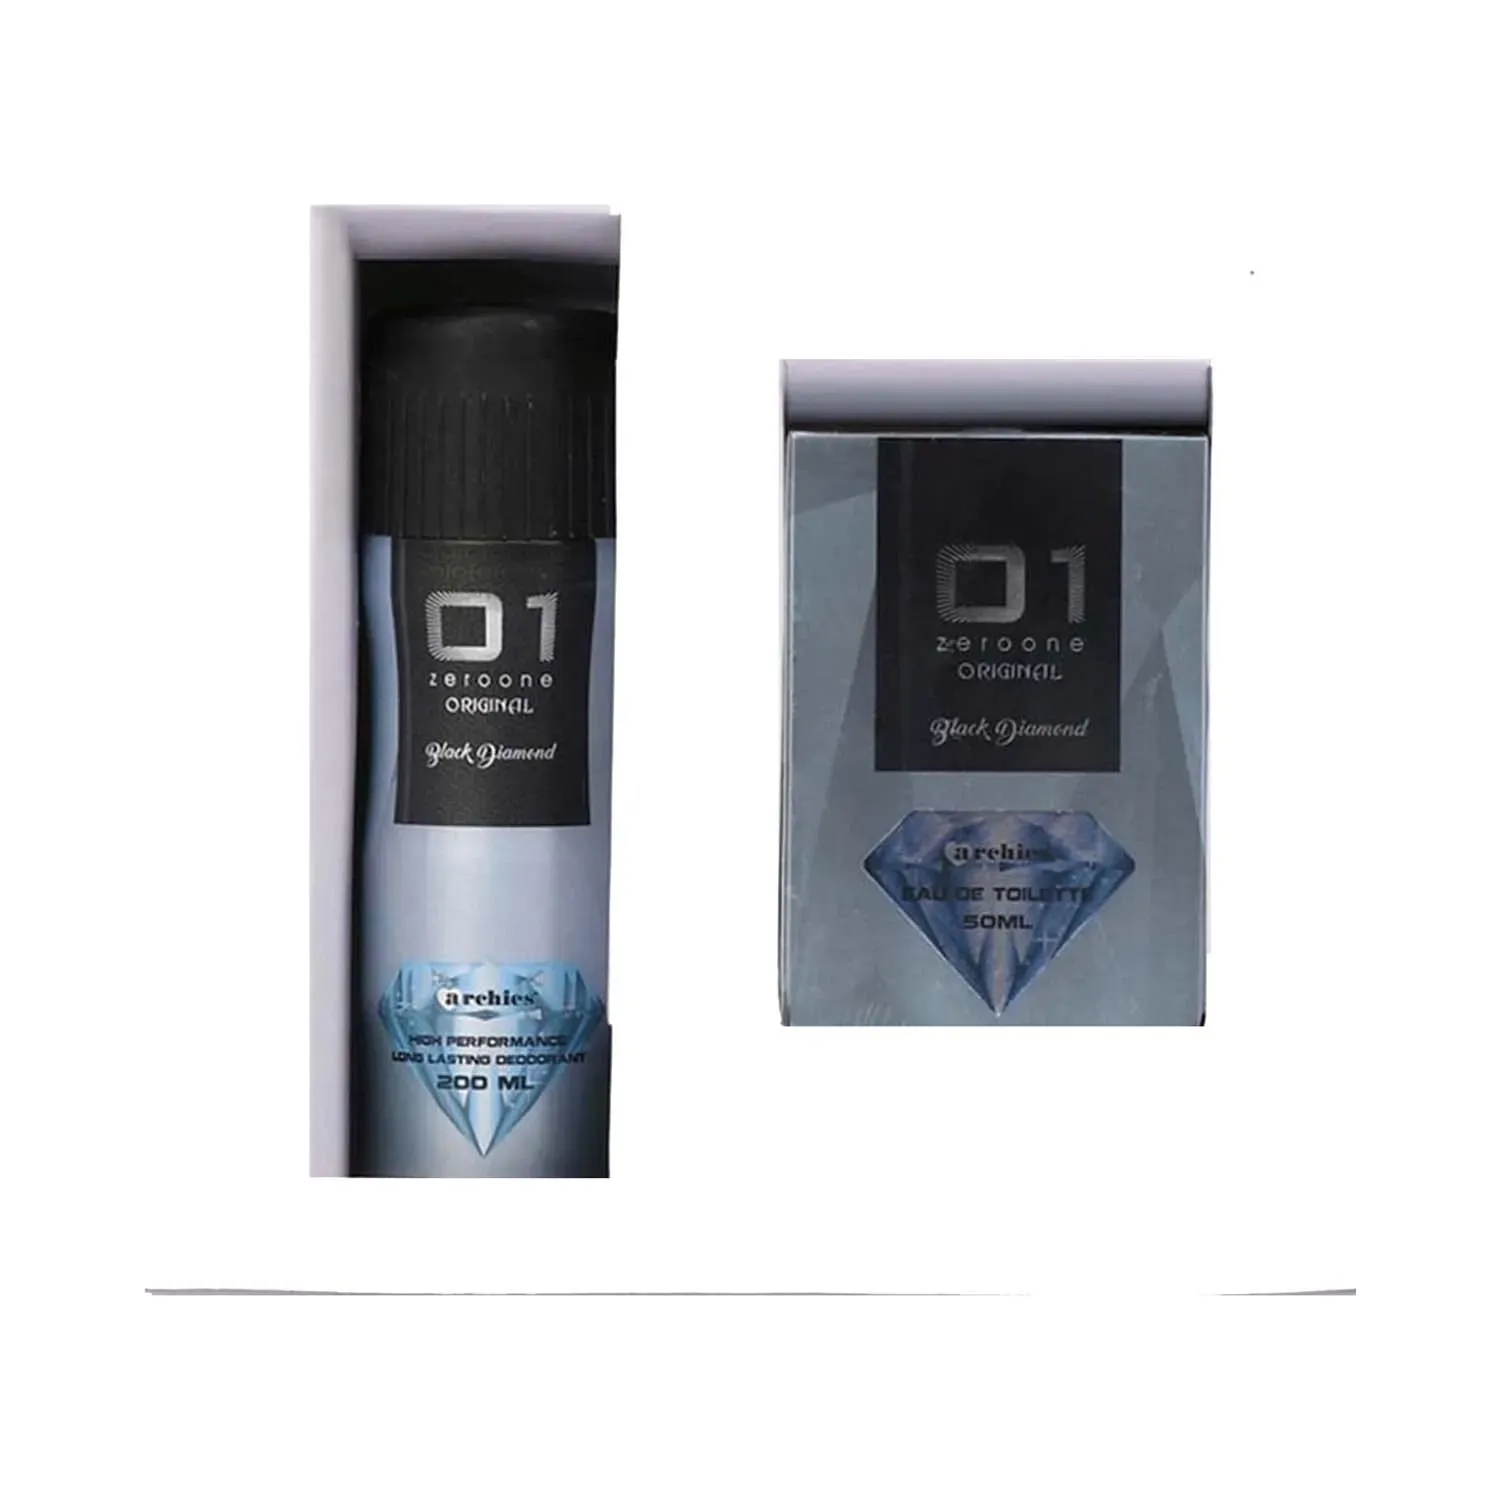 Archies Parfum | Archies Parfum 01 Original Black Diamond Eau De Toilette and Deodorant (2Pcs)